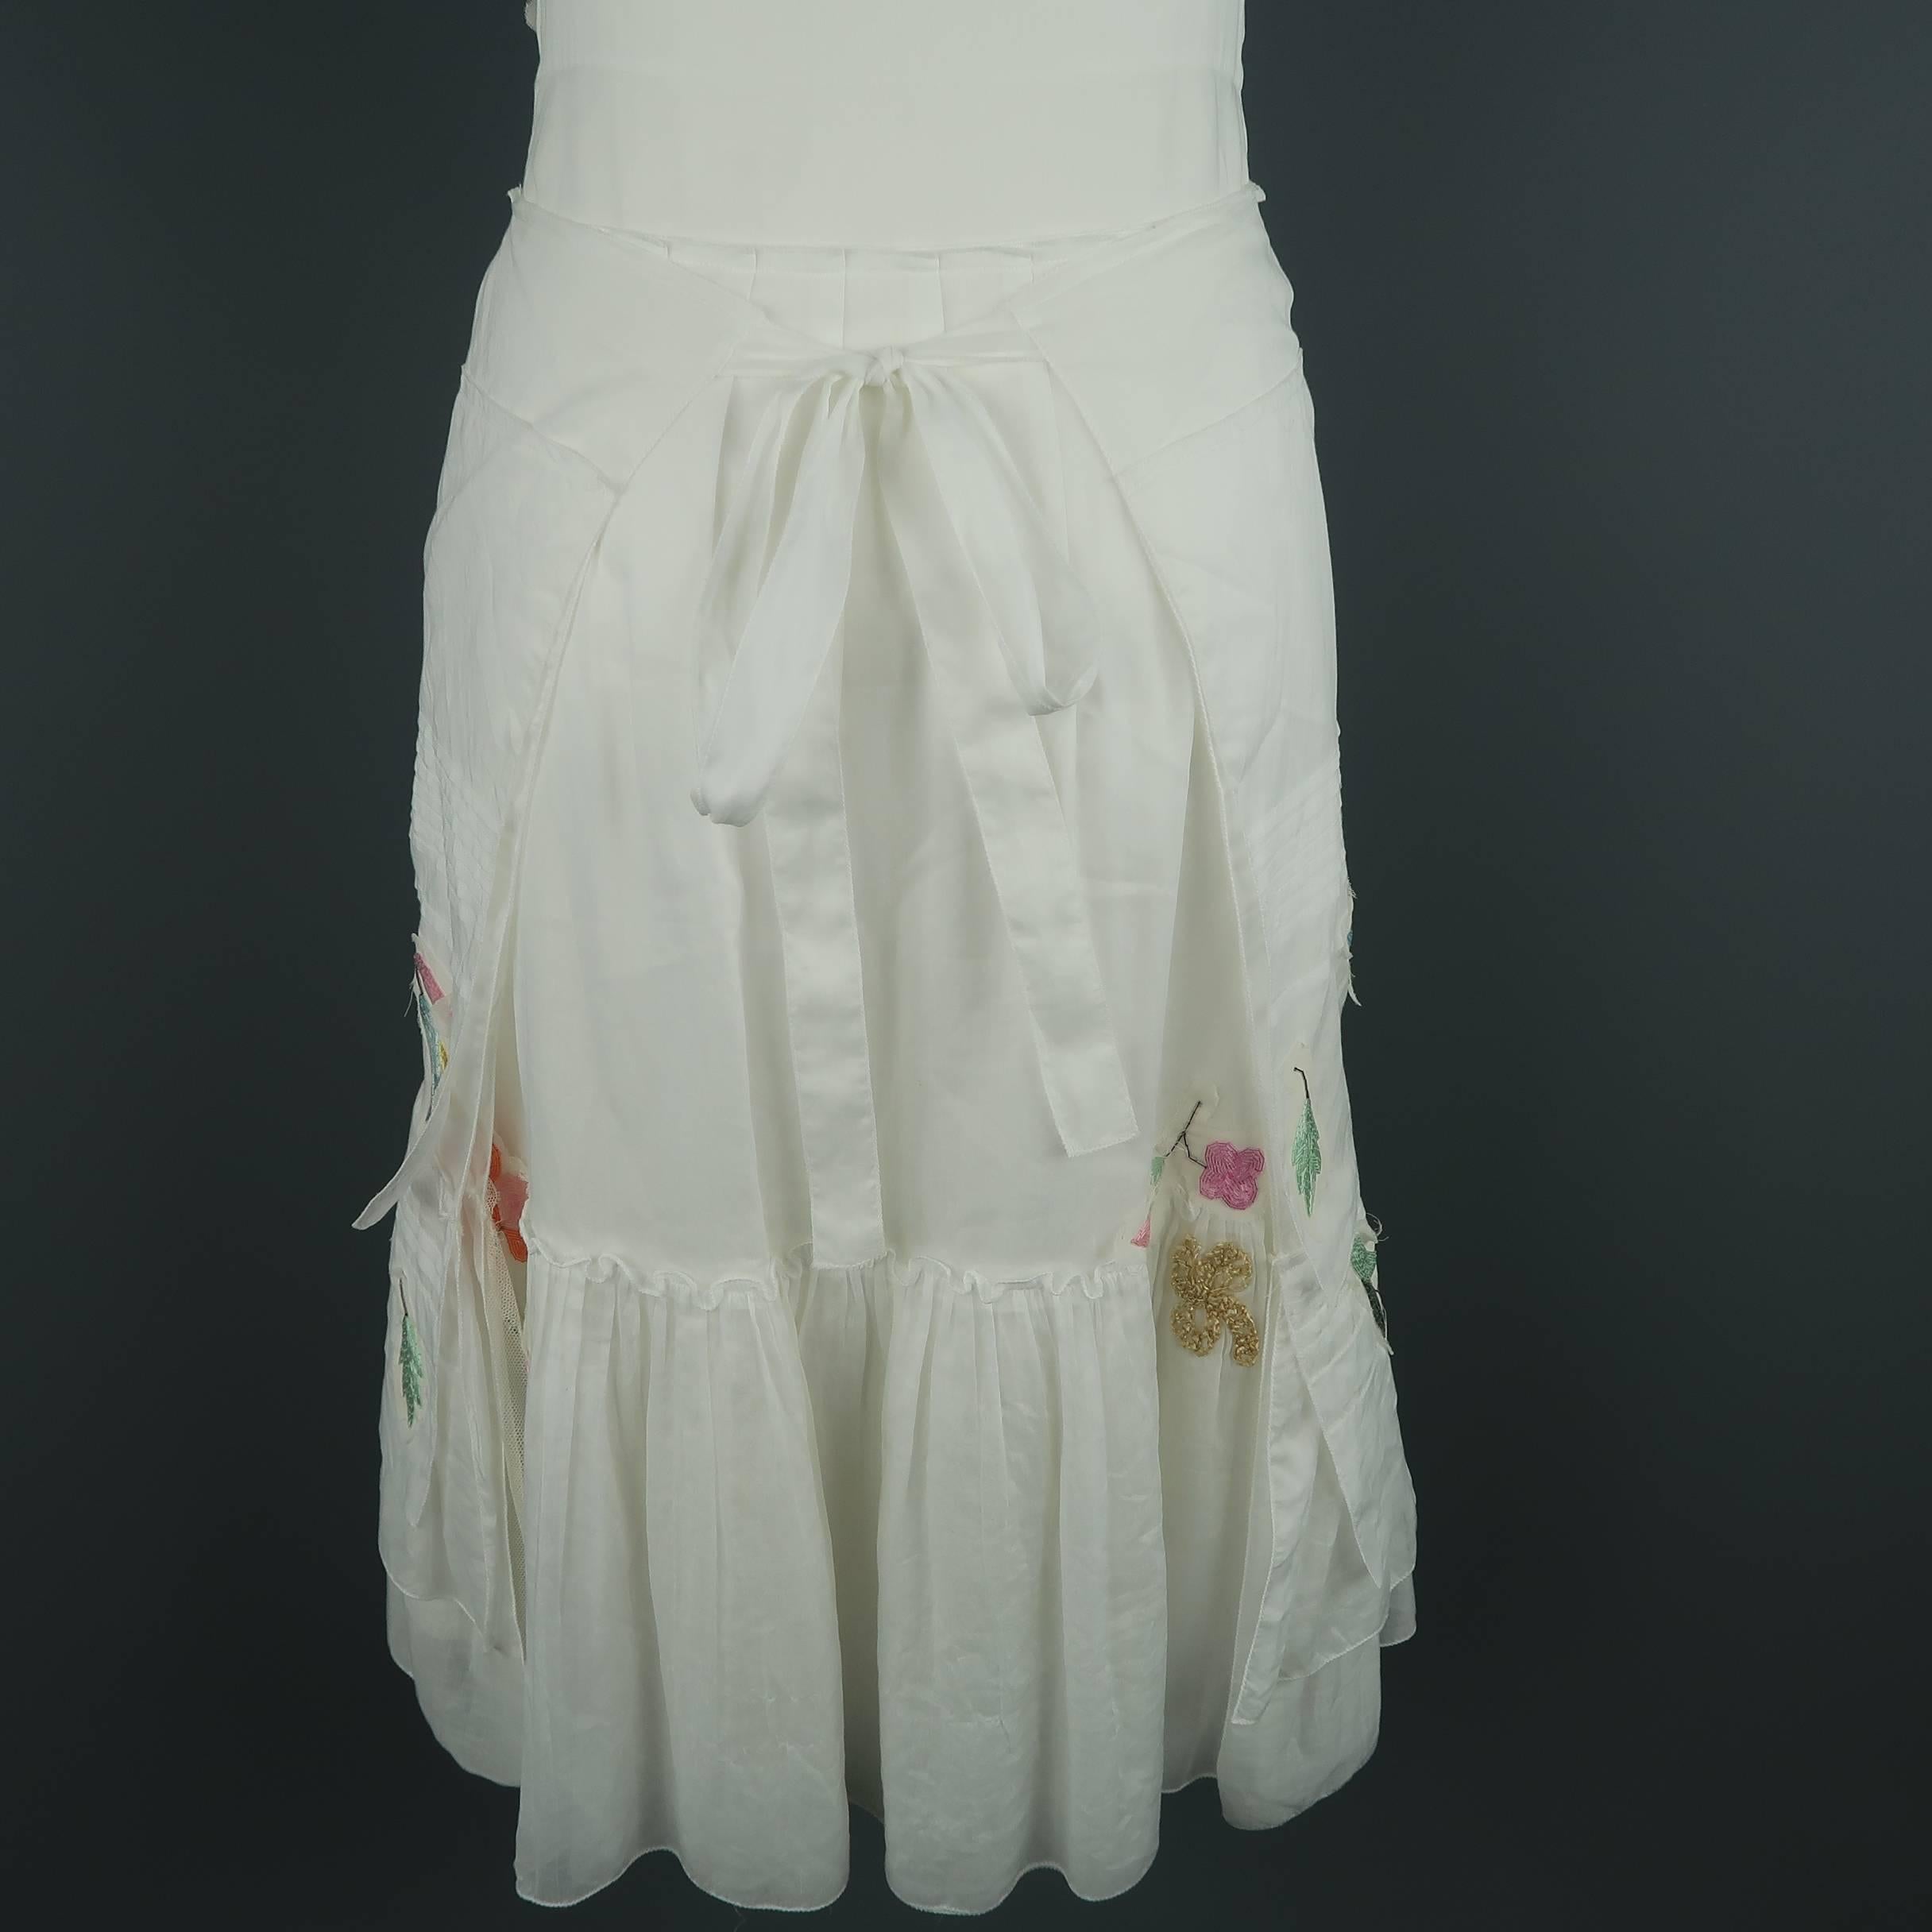 PRADA Size 6 White Beaded Floral Cotton Sun Dress 4